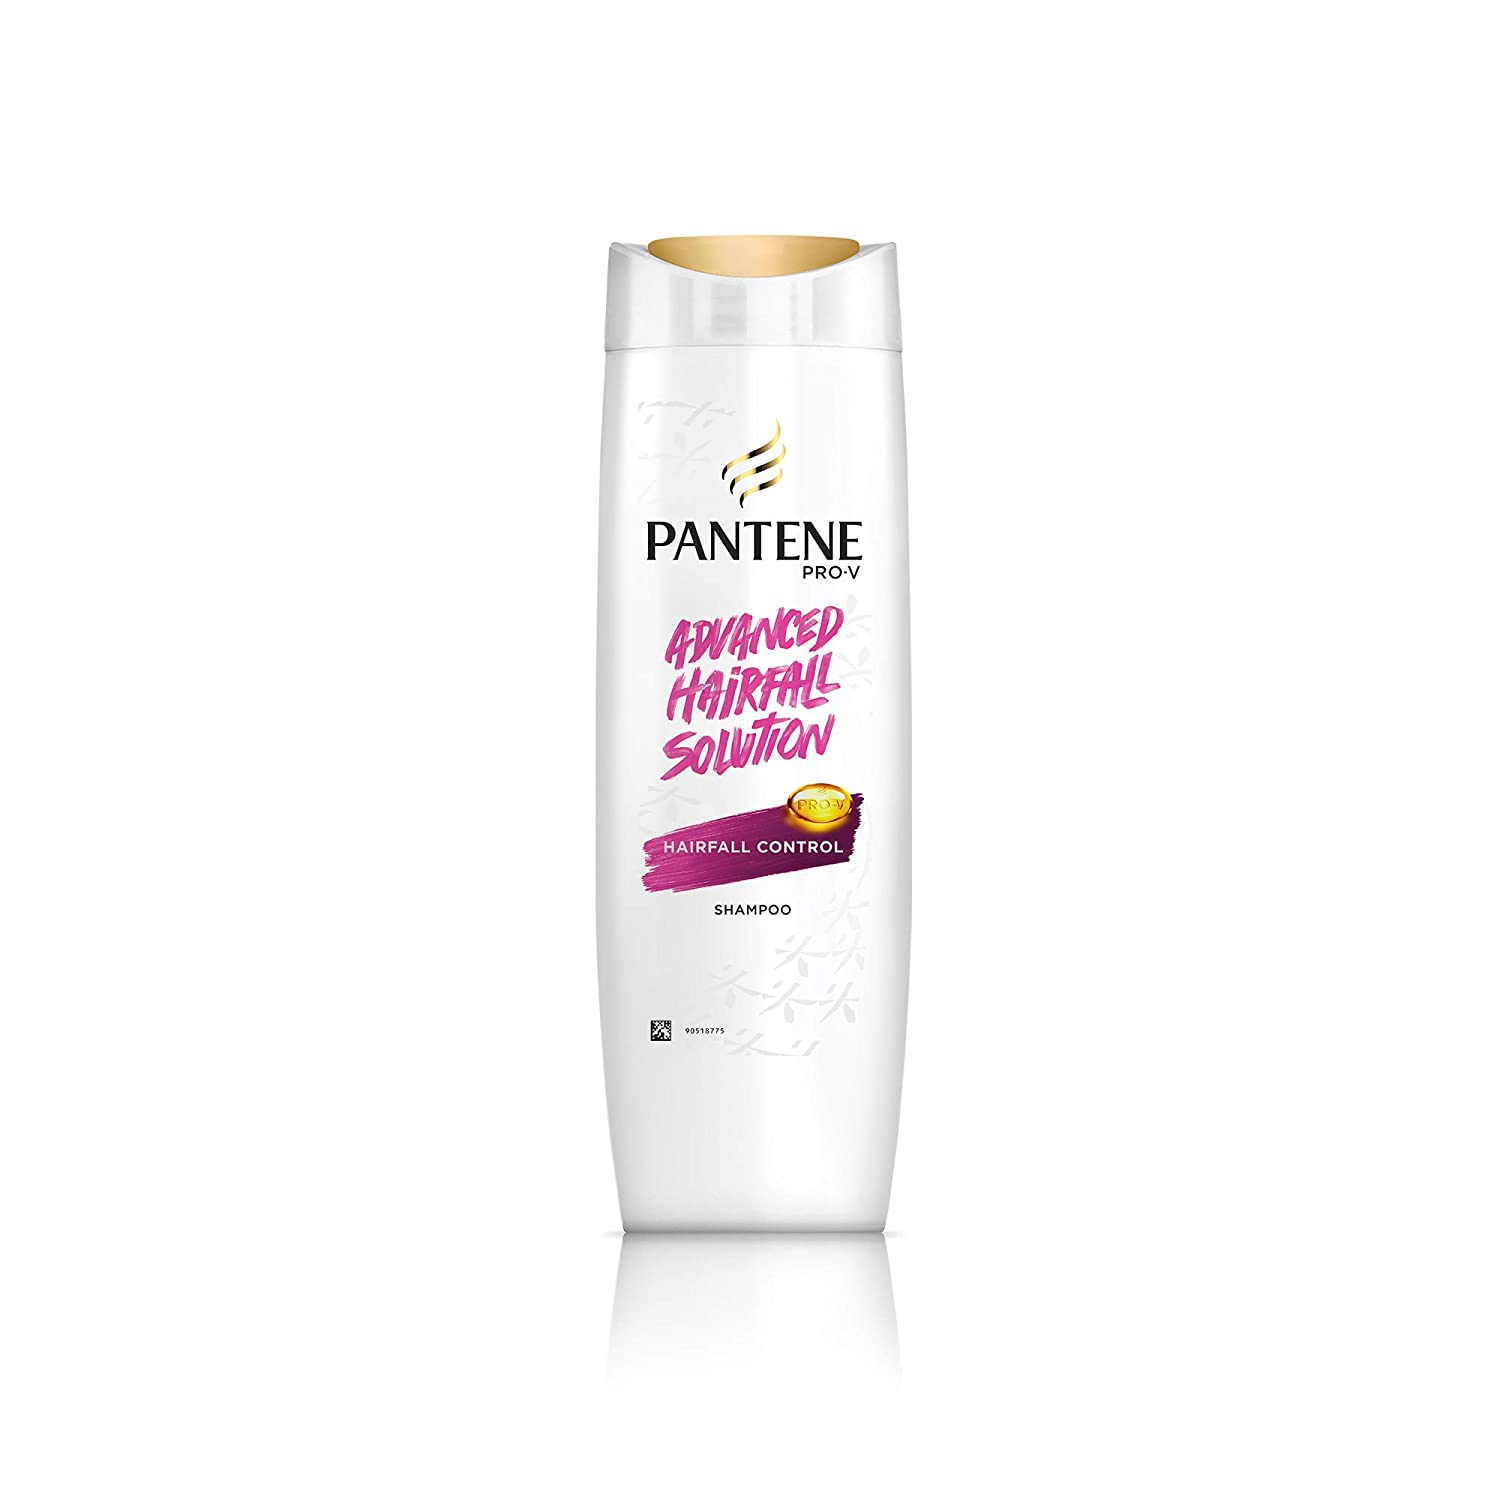 Pantene Advanced Hair Fall Solution Anti Hair Fall Shampoo-72ml